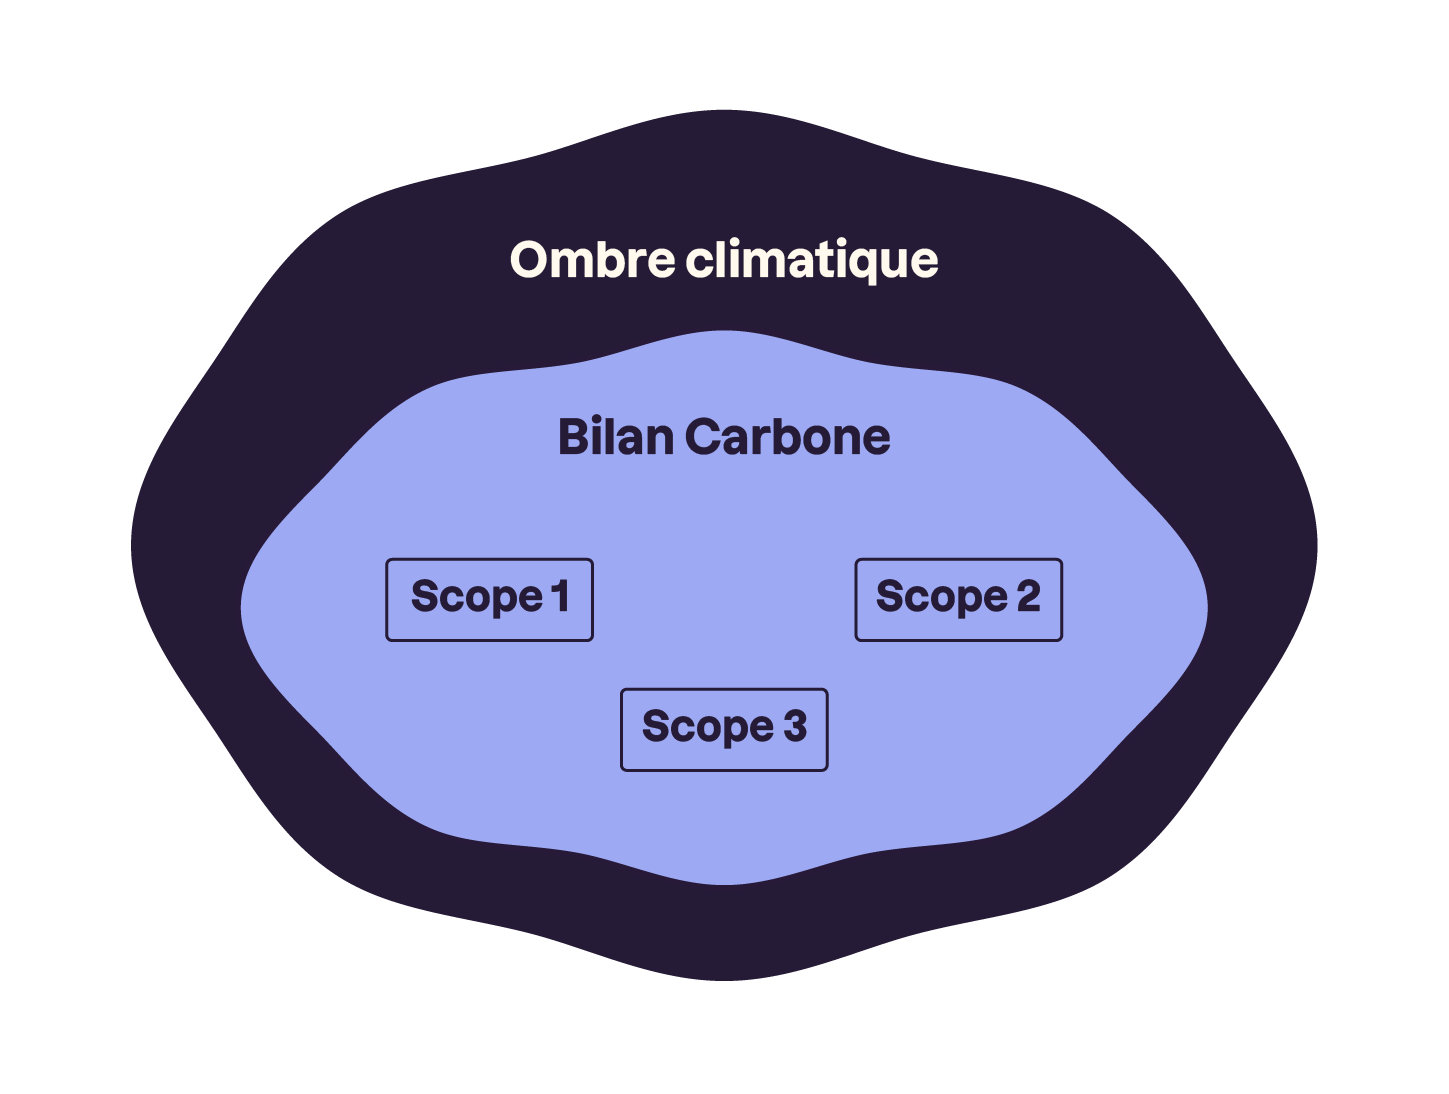 2 cercles l'un dans l'autre. Le plus petit comprend les textes Bilan Carbon et Scope 1, 2 et 3. Le plus grand, à l'extérieur du premier, comprend le titre ombre climatique